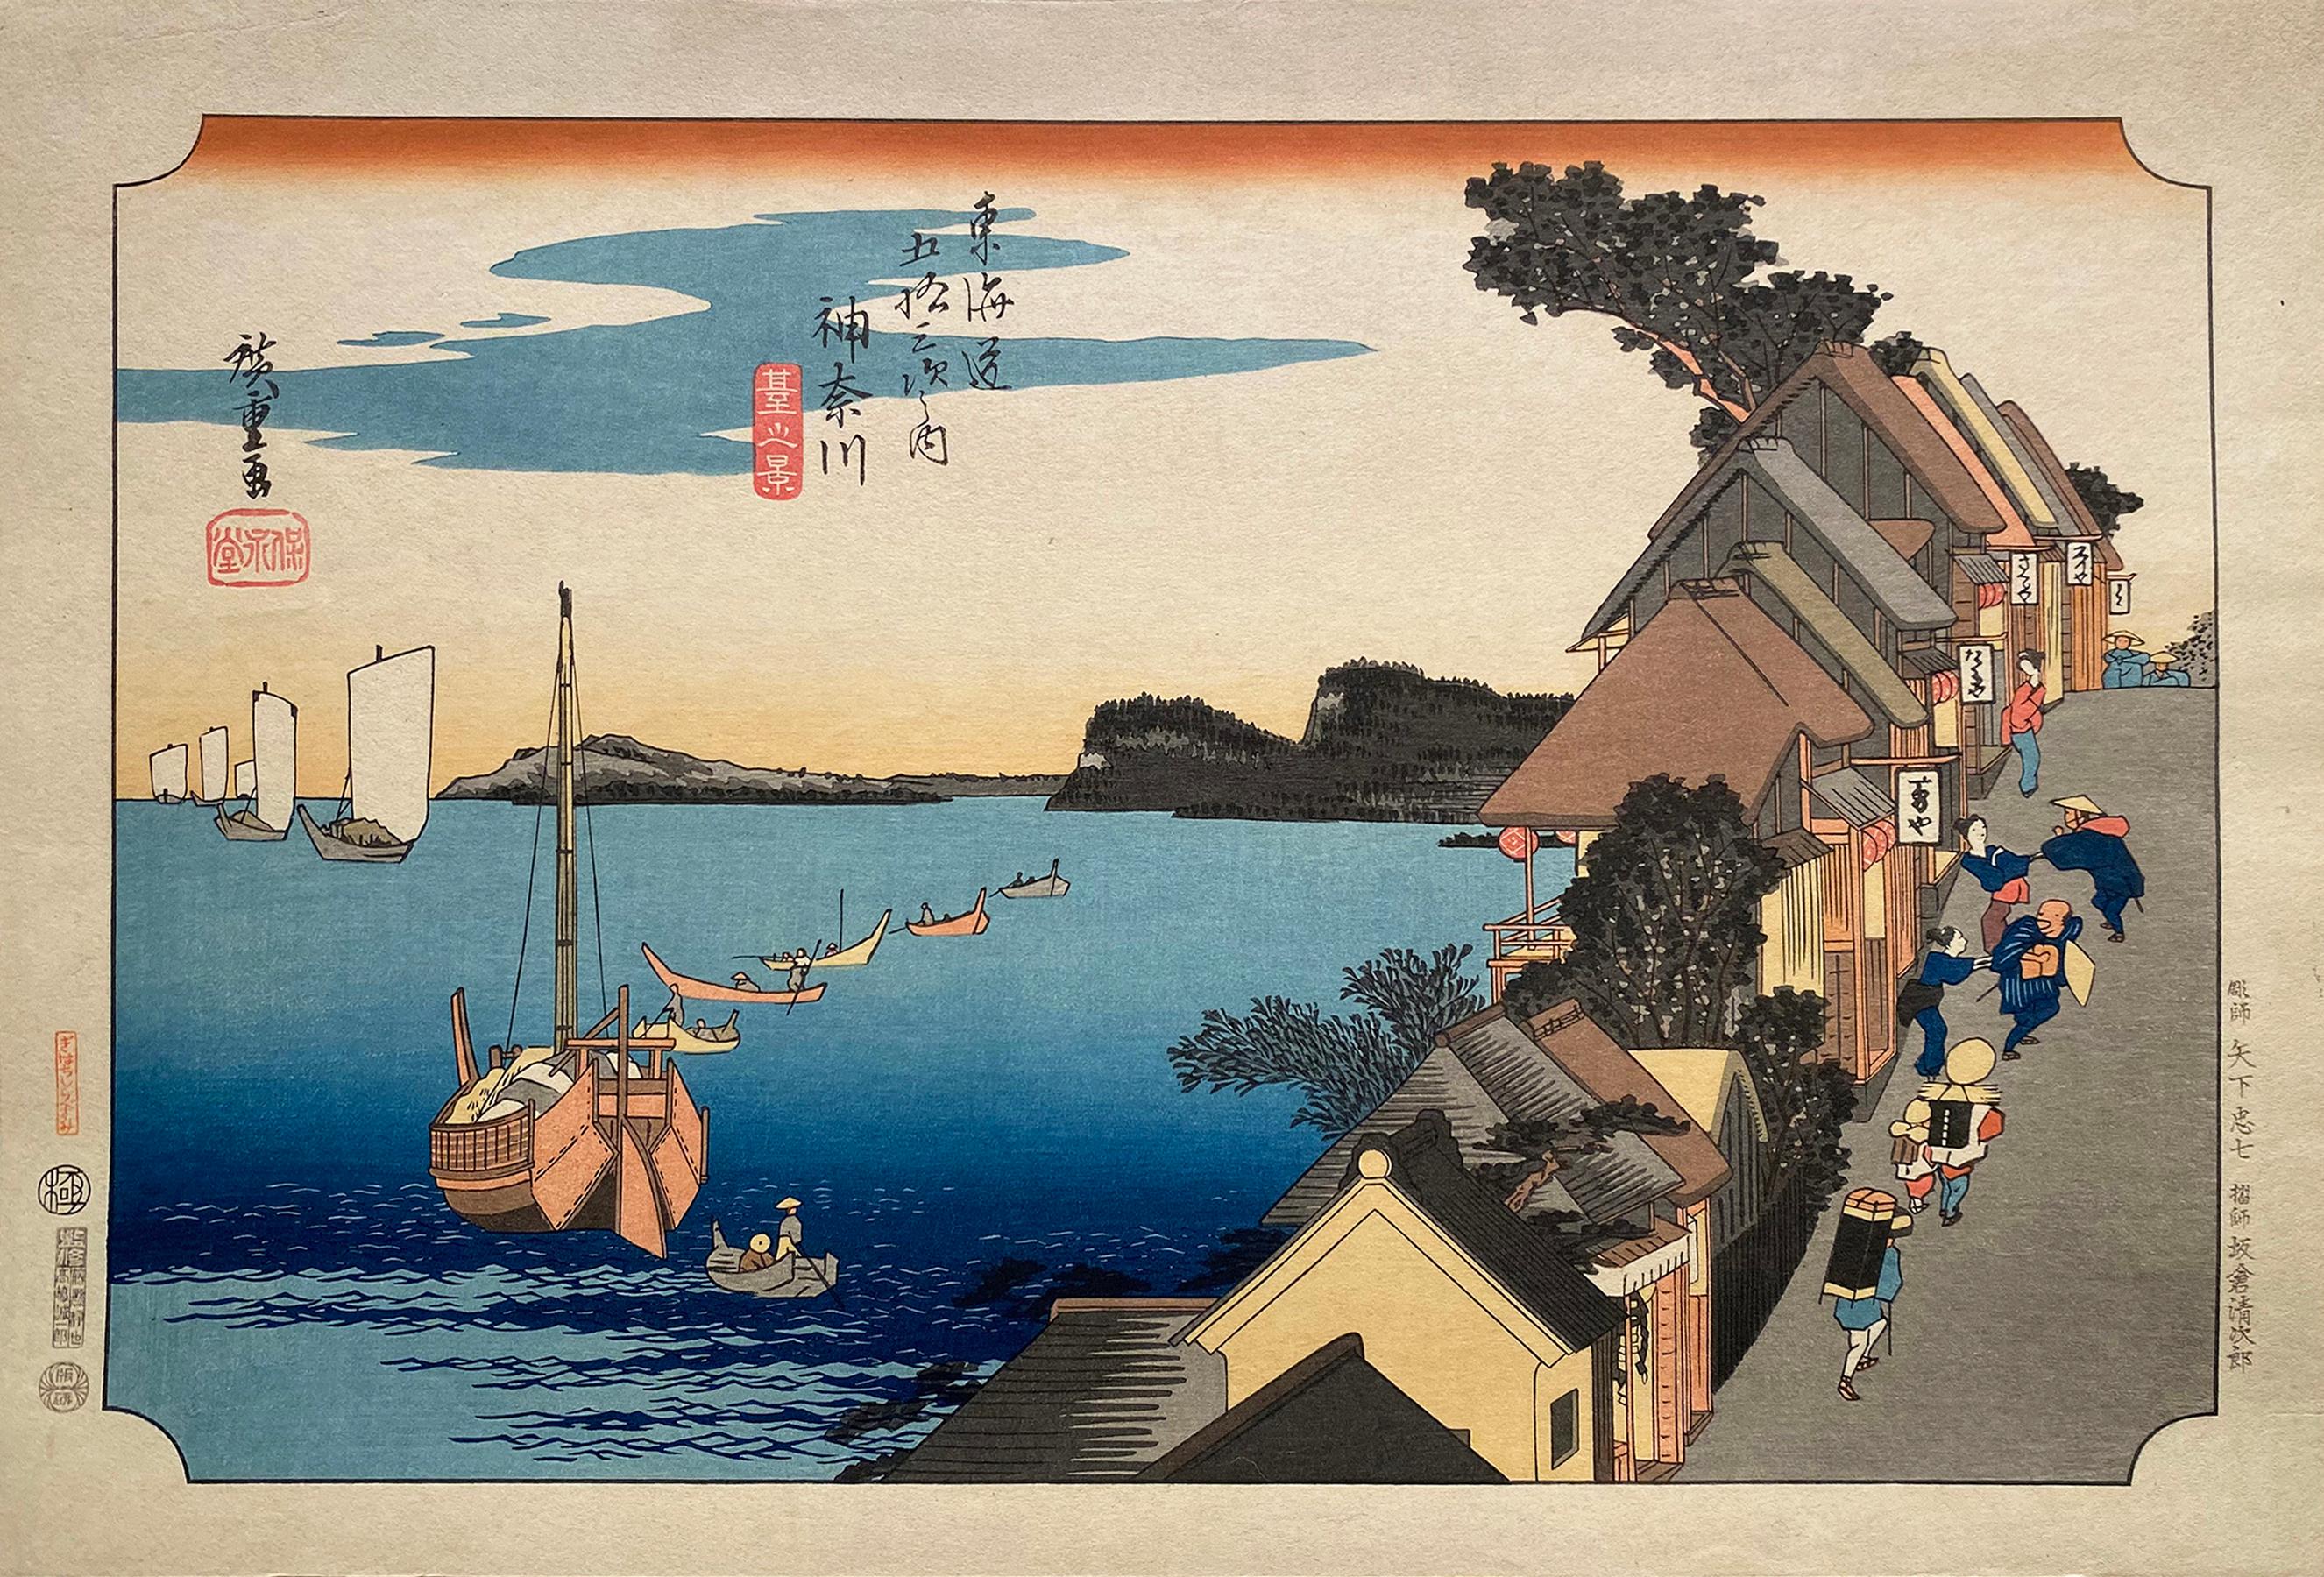 'A View of Kanagawa', After Utagawa Hiroshige 歌川廣重, Ukiyo-e Woodblock, Tokaido